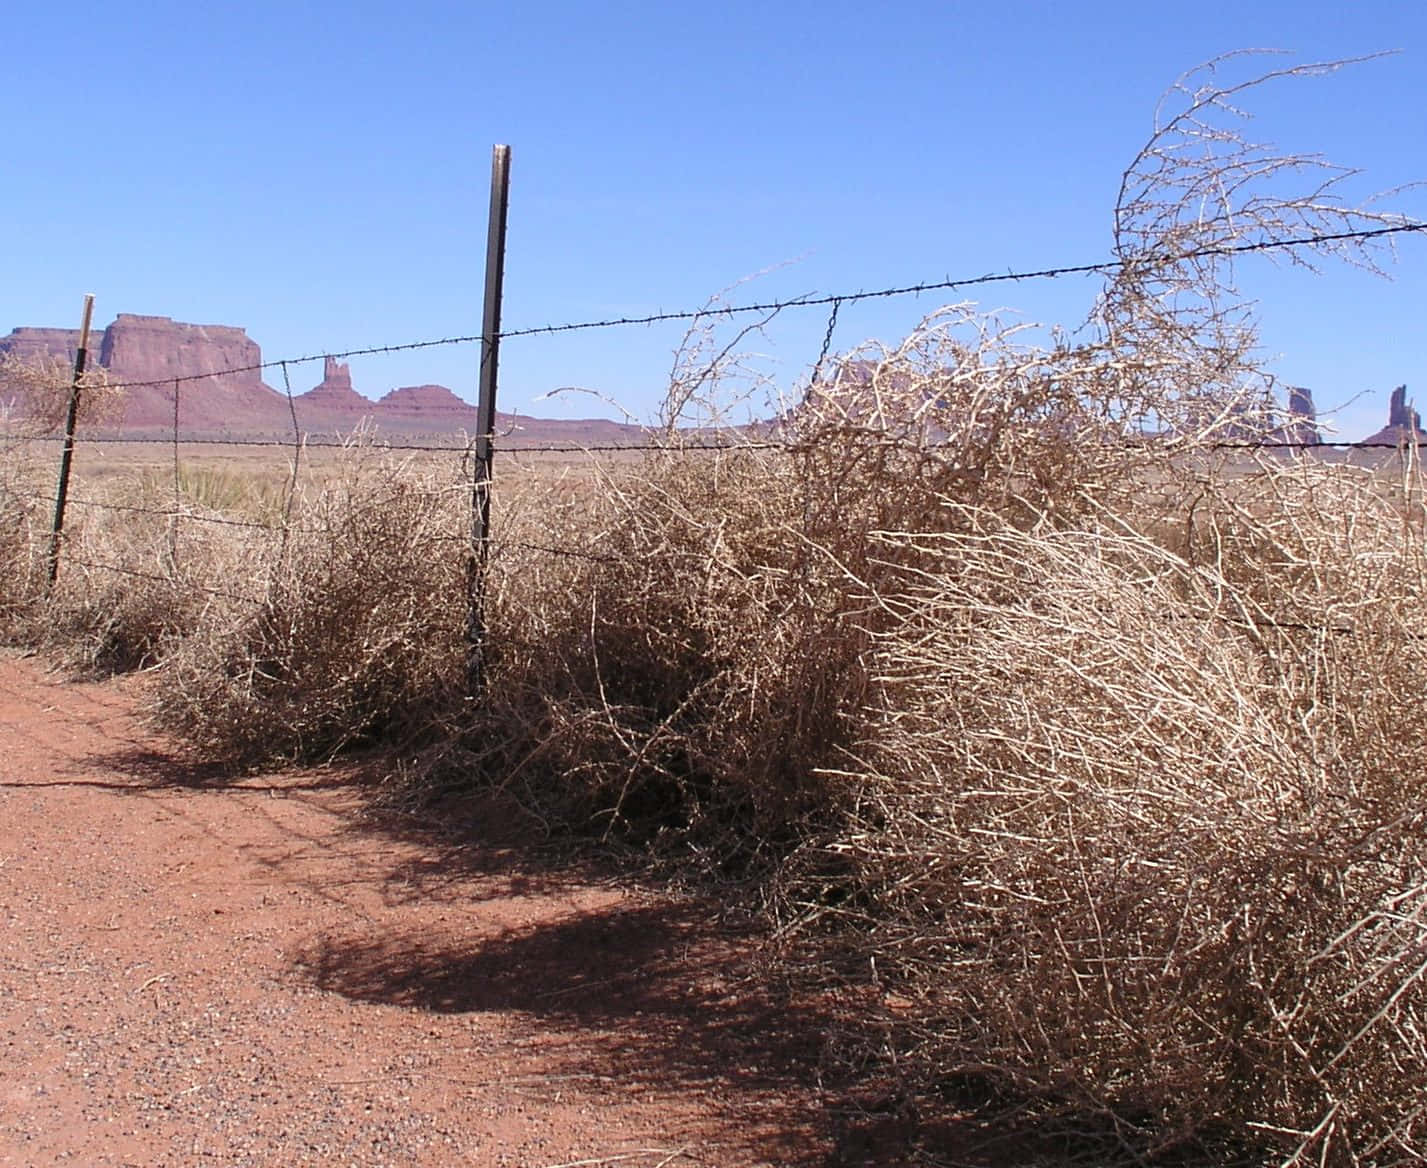 A Lone Tumbleweed In The Desert